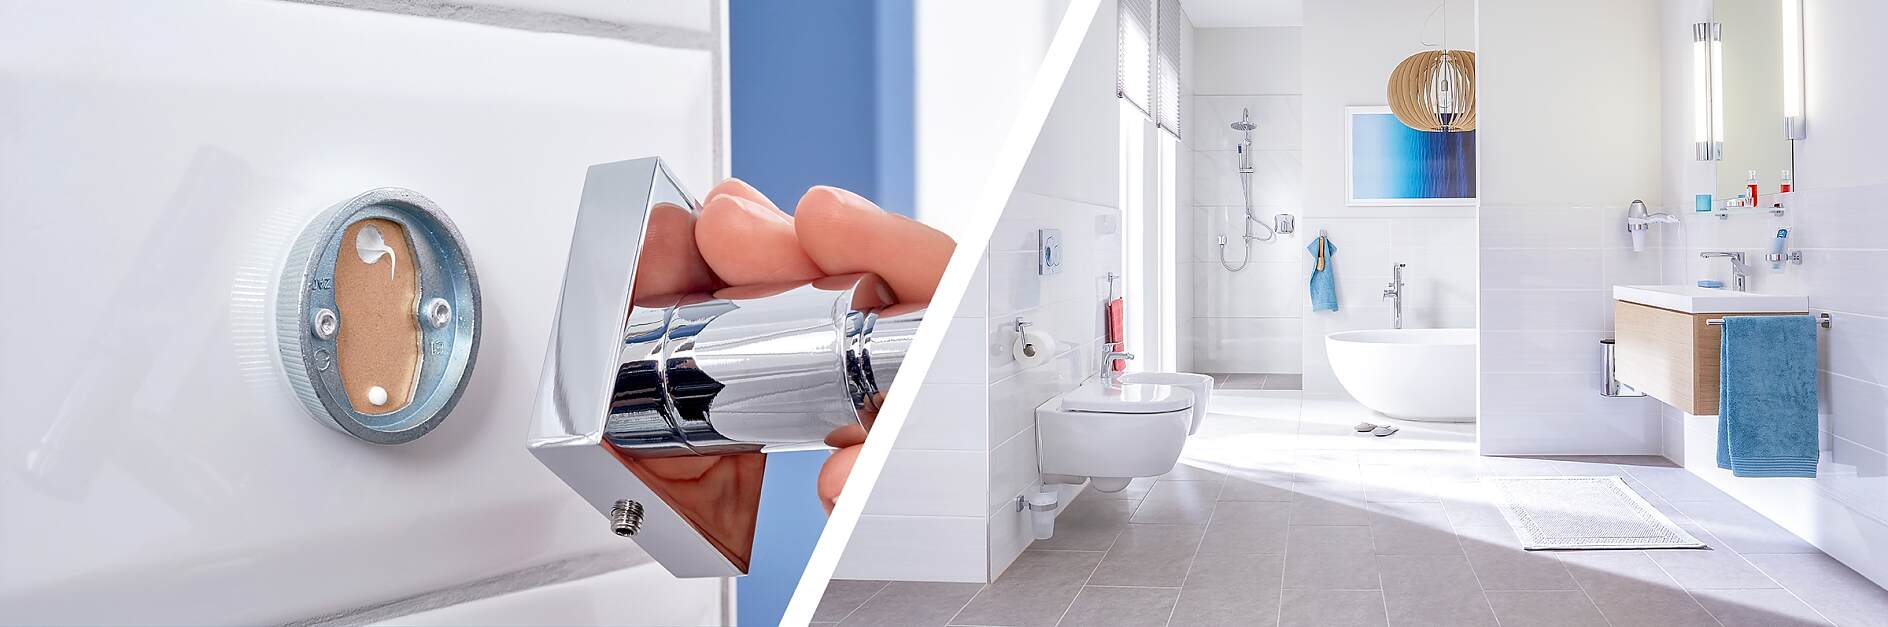 Porte-savon à crochet pour douche | Élite sanitaire